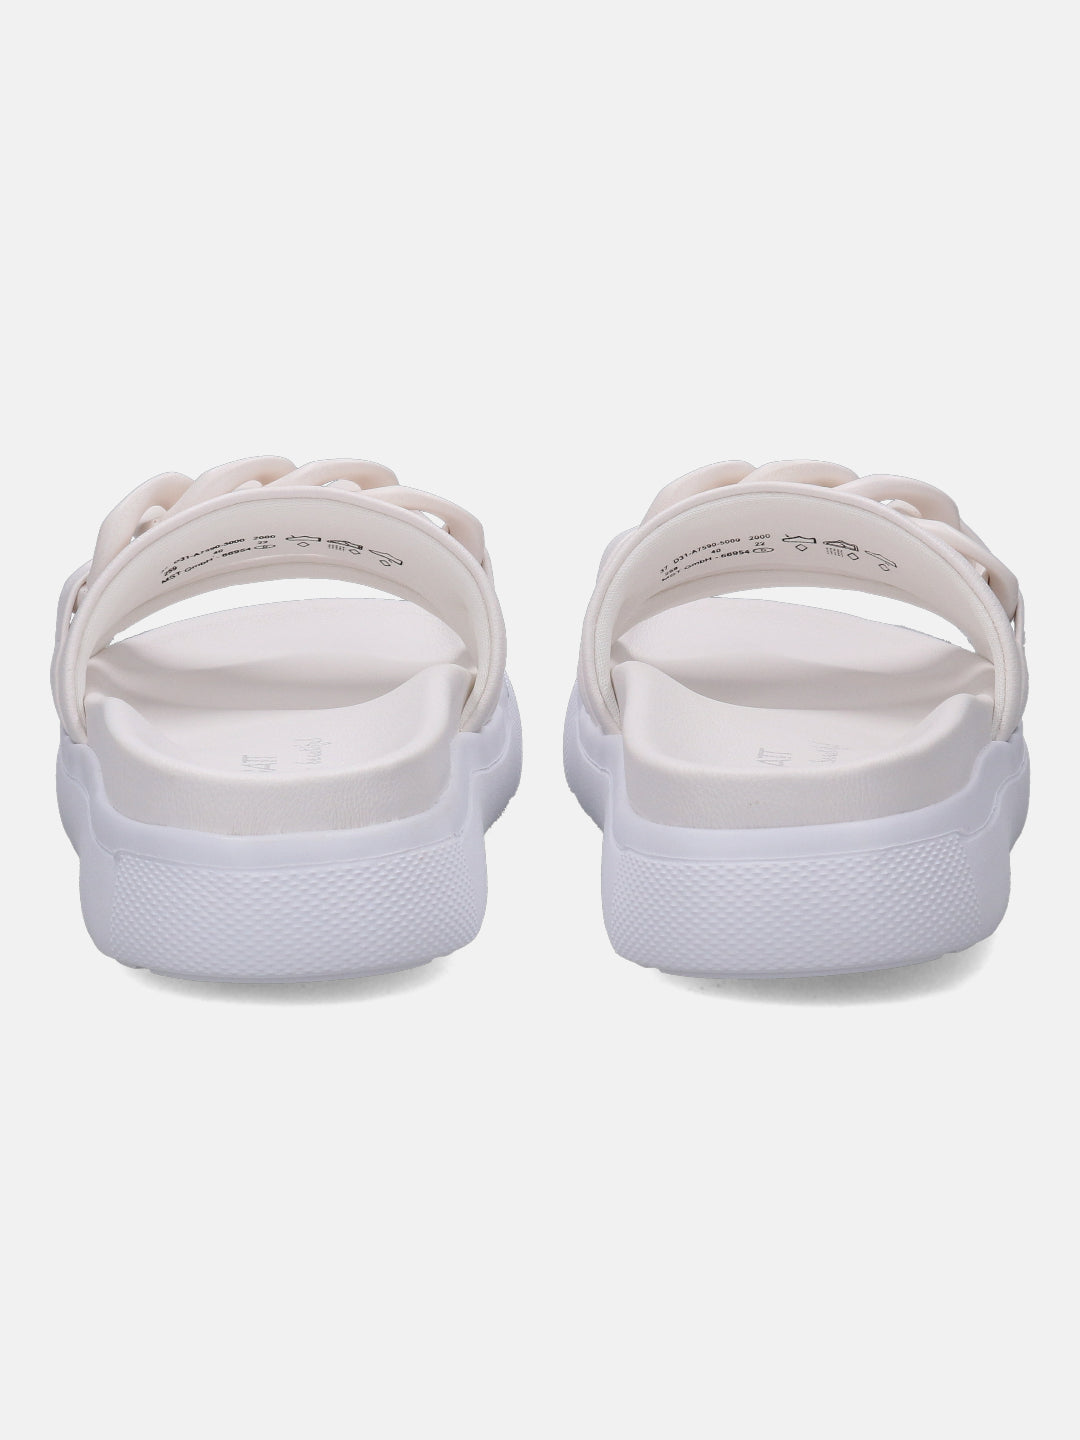 Dalia White Flatform Sandals - BAGATT